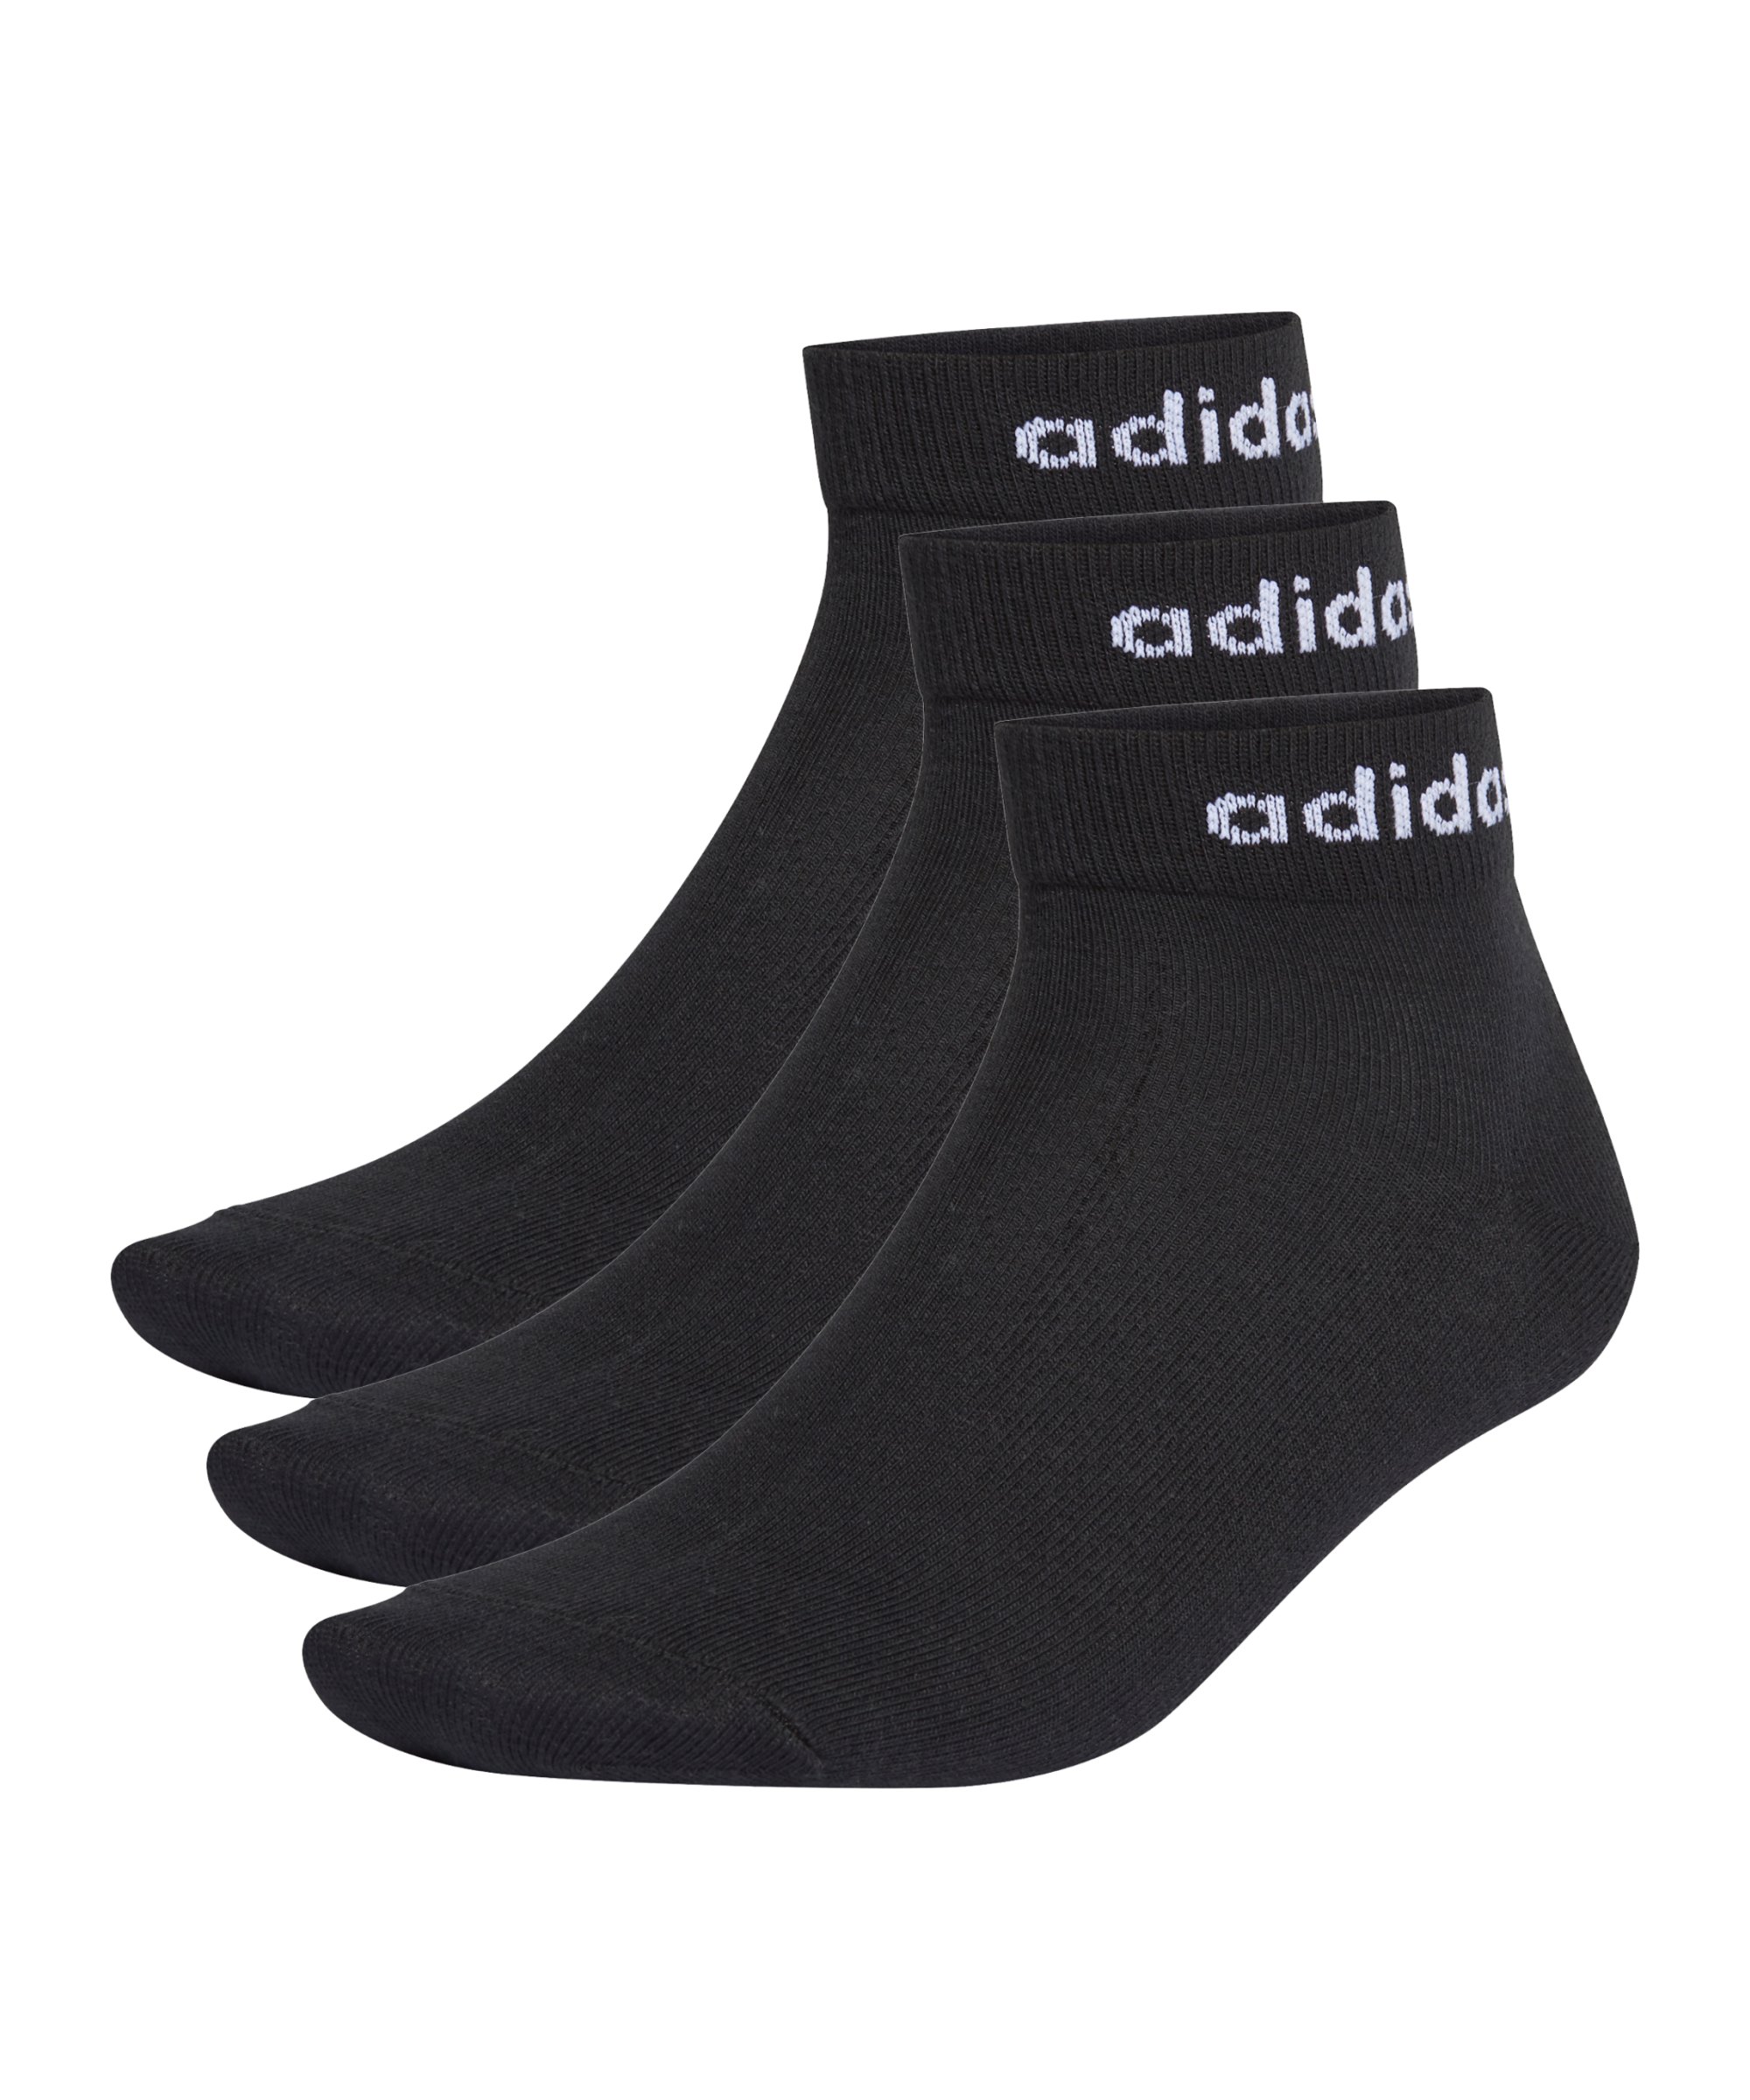 adidas Ankle Socken 3 Paar Schwarz Weiss - schwarz